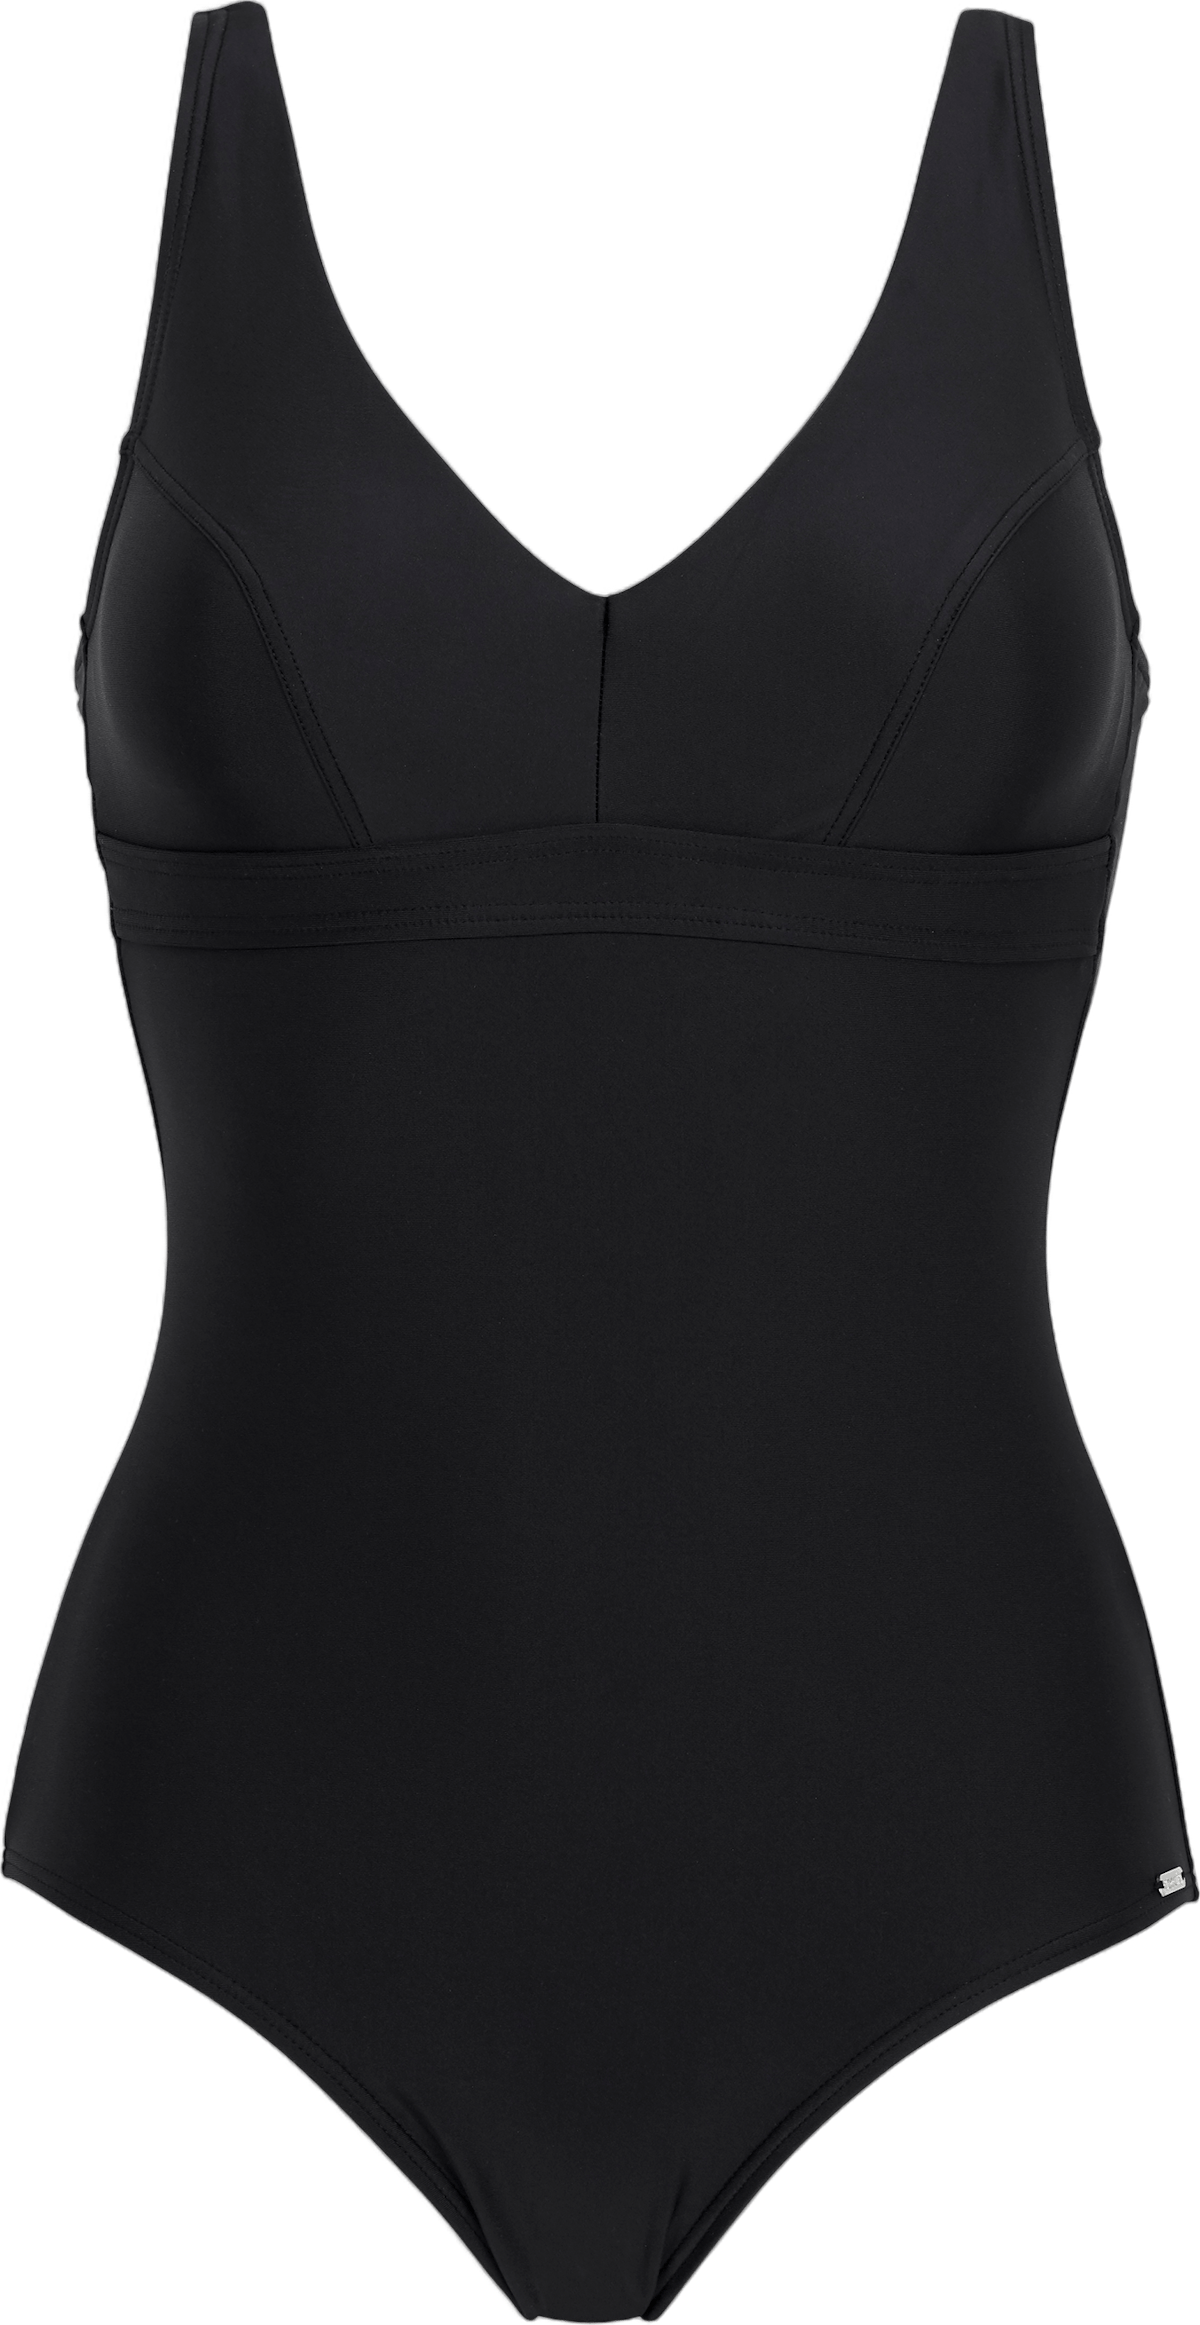 Alanya Kanter's Swimsuit Black